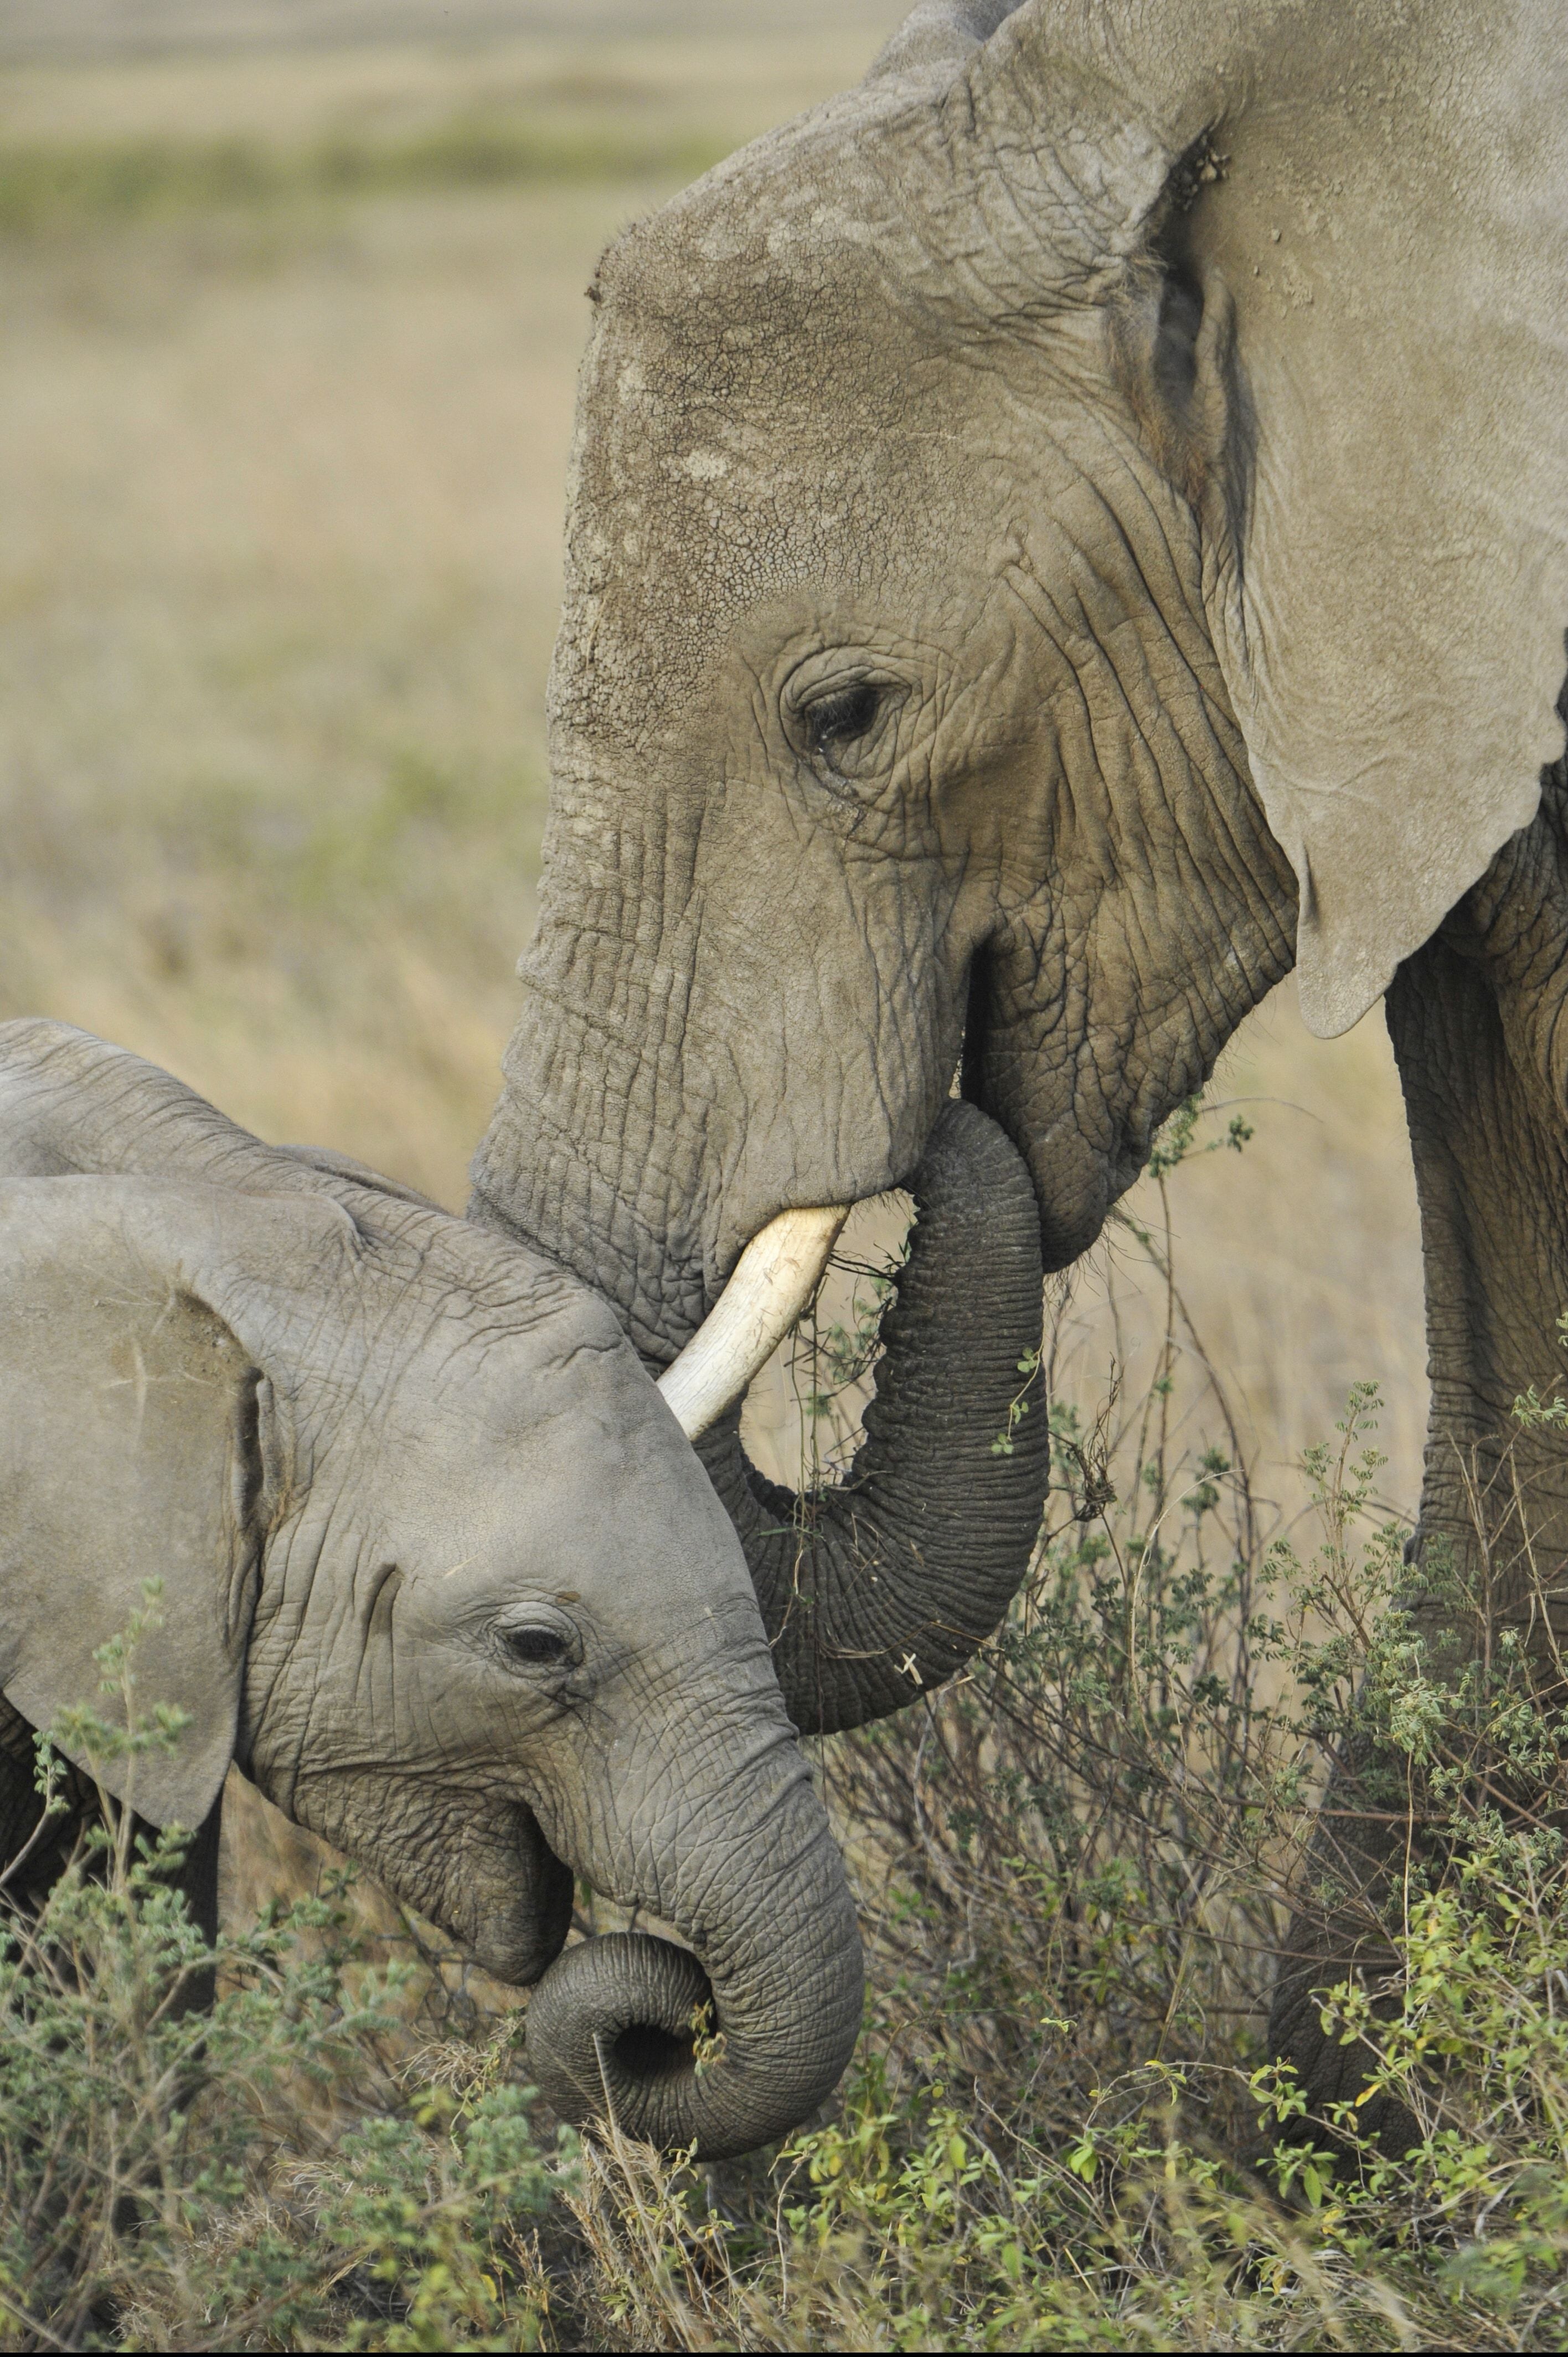 madre elefante junto a bebé elefante en campo de hierba verde durante